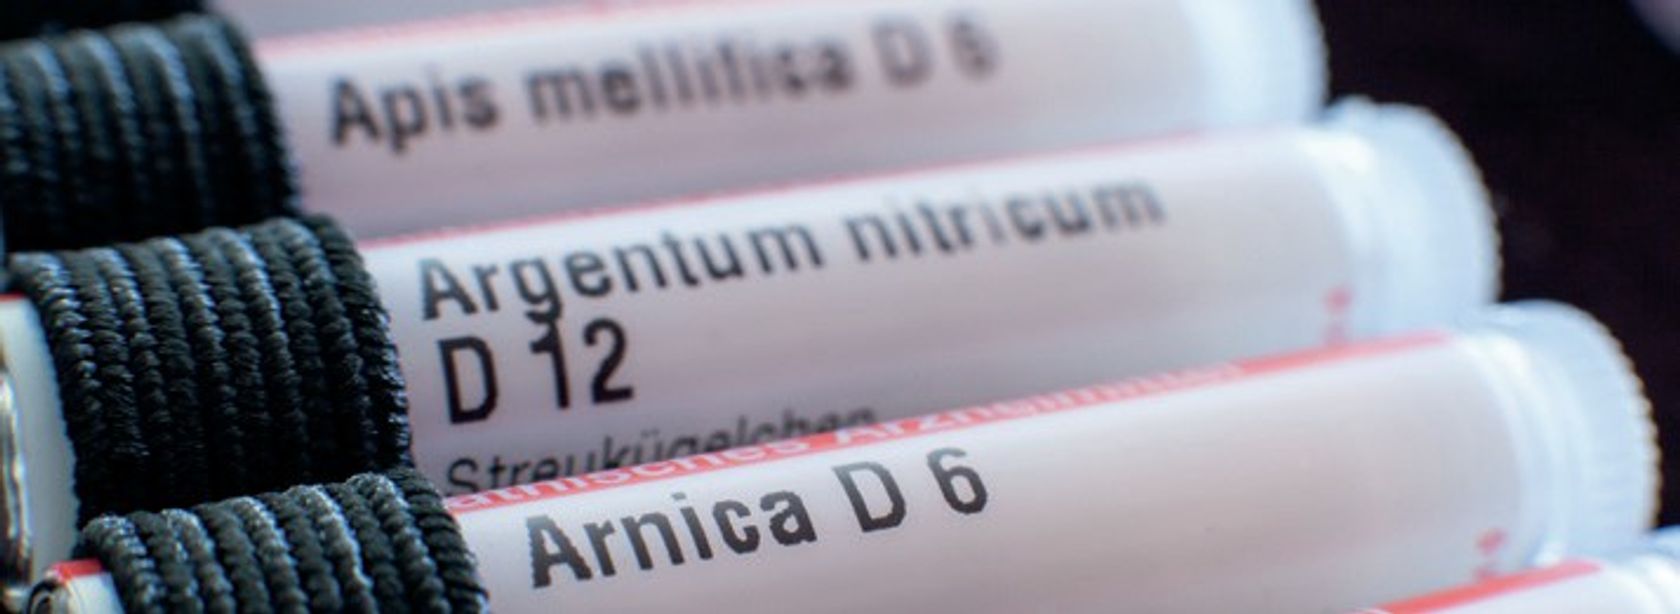 Behälter für Globuli sind zu sehen, die in einem Mäppchen stecken - Apis mellifica D6, Argentum nitricum D12, Arnica D6.